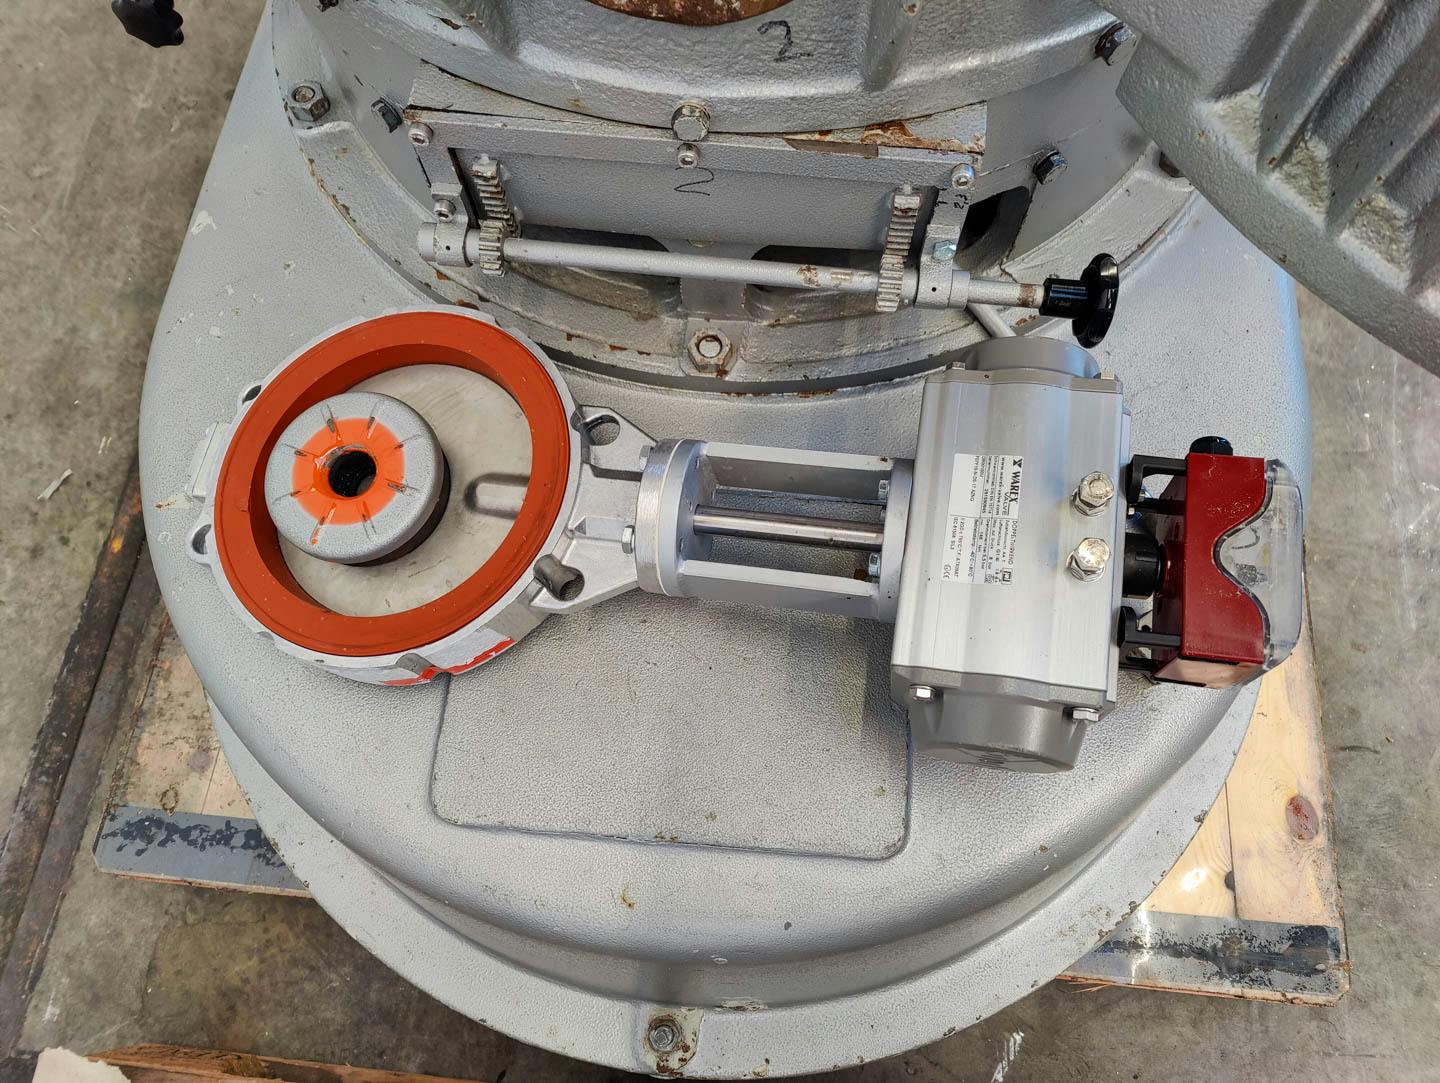 Jackering UR III A/B "Ultra-Rotor" - Molino de impacto para finos - image 10